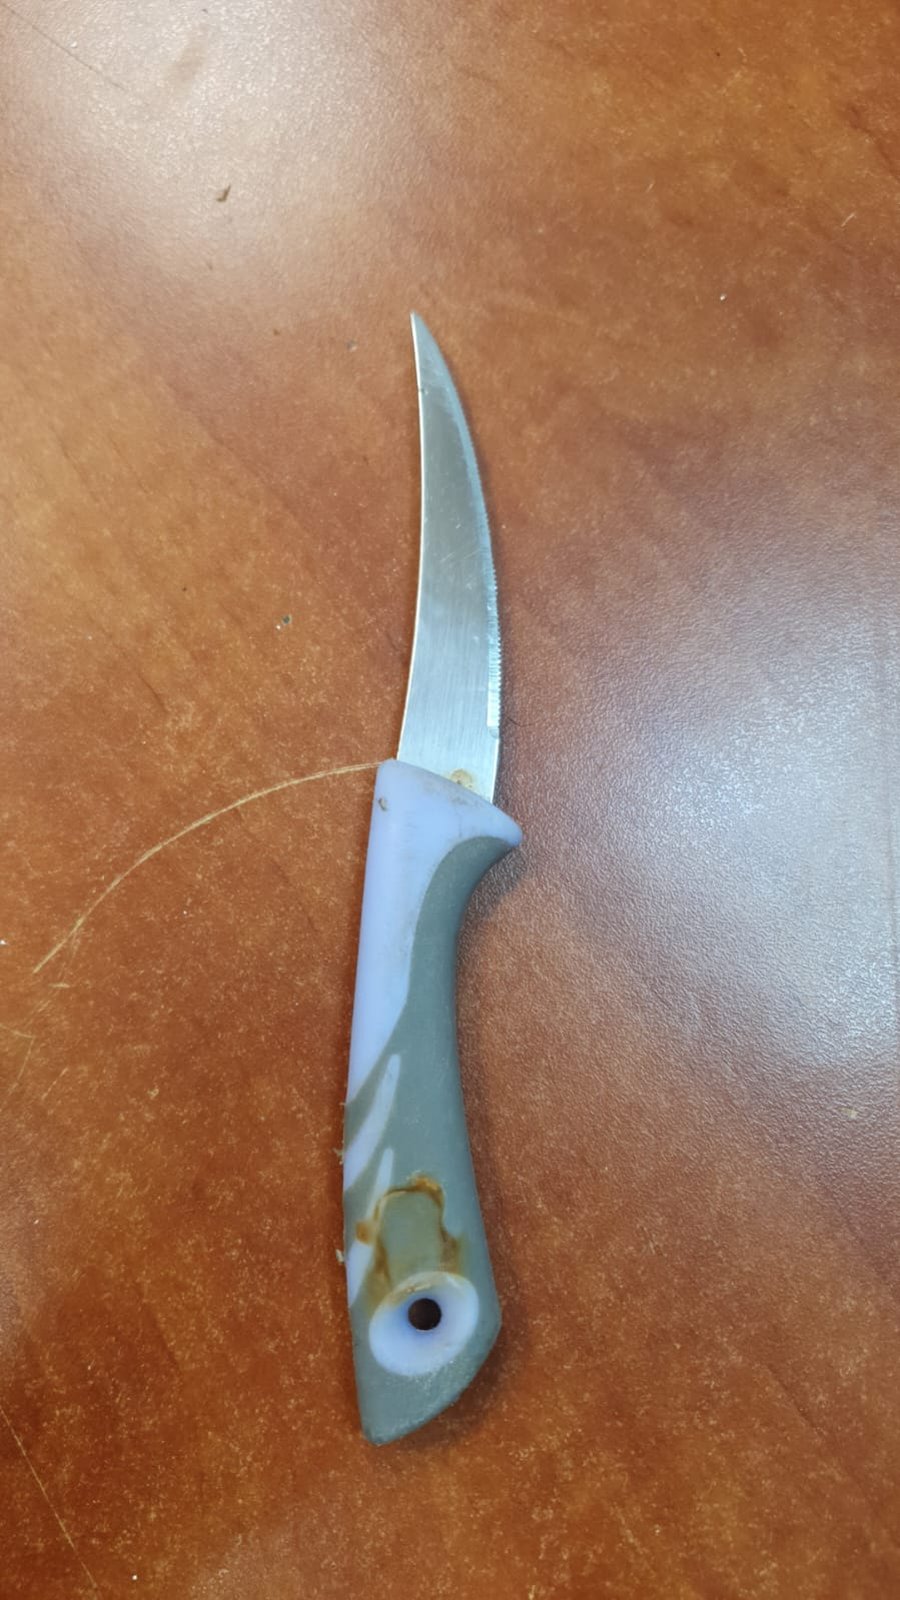 הסכין שנתפסה אצל החשוד